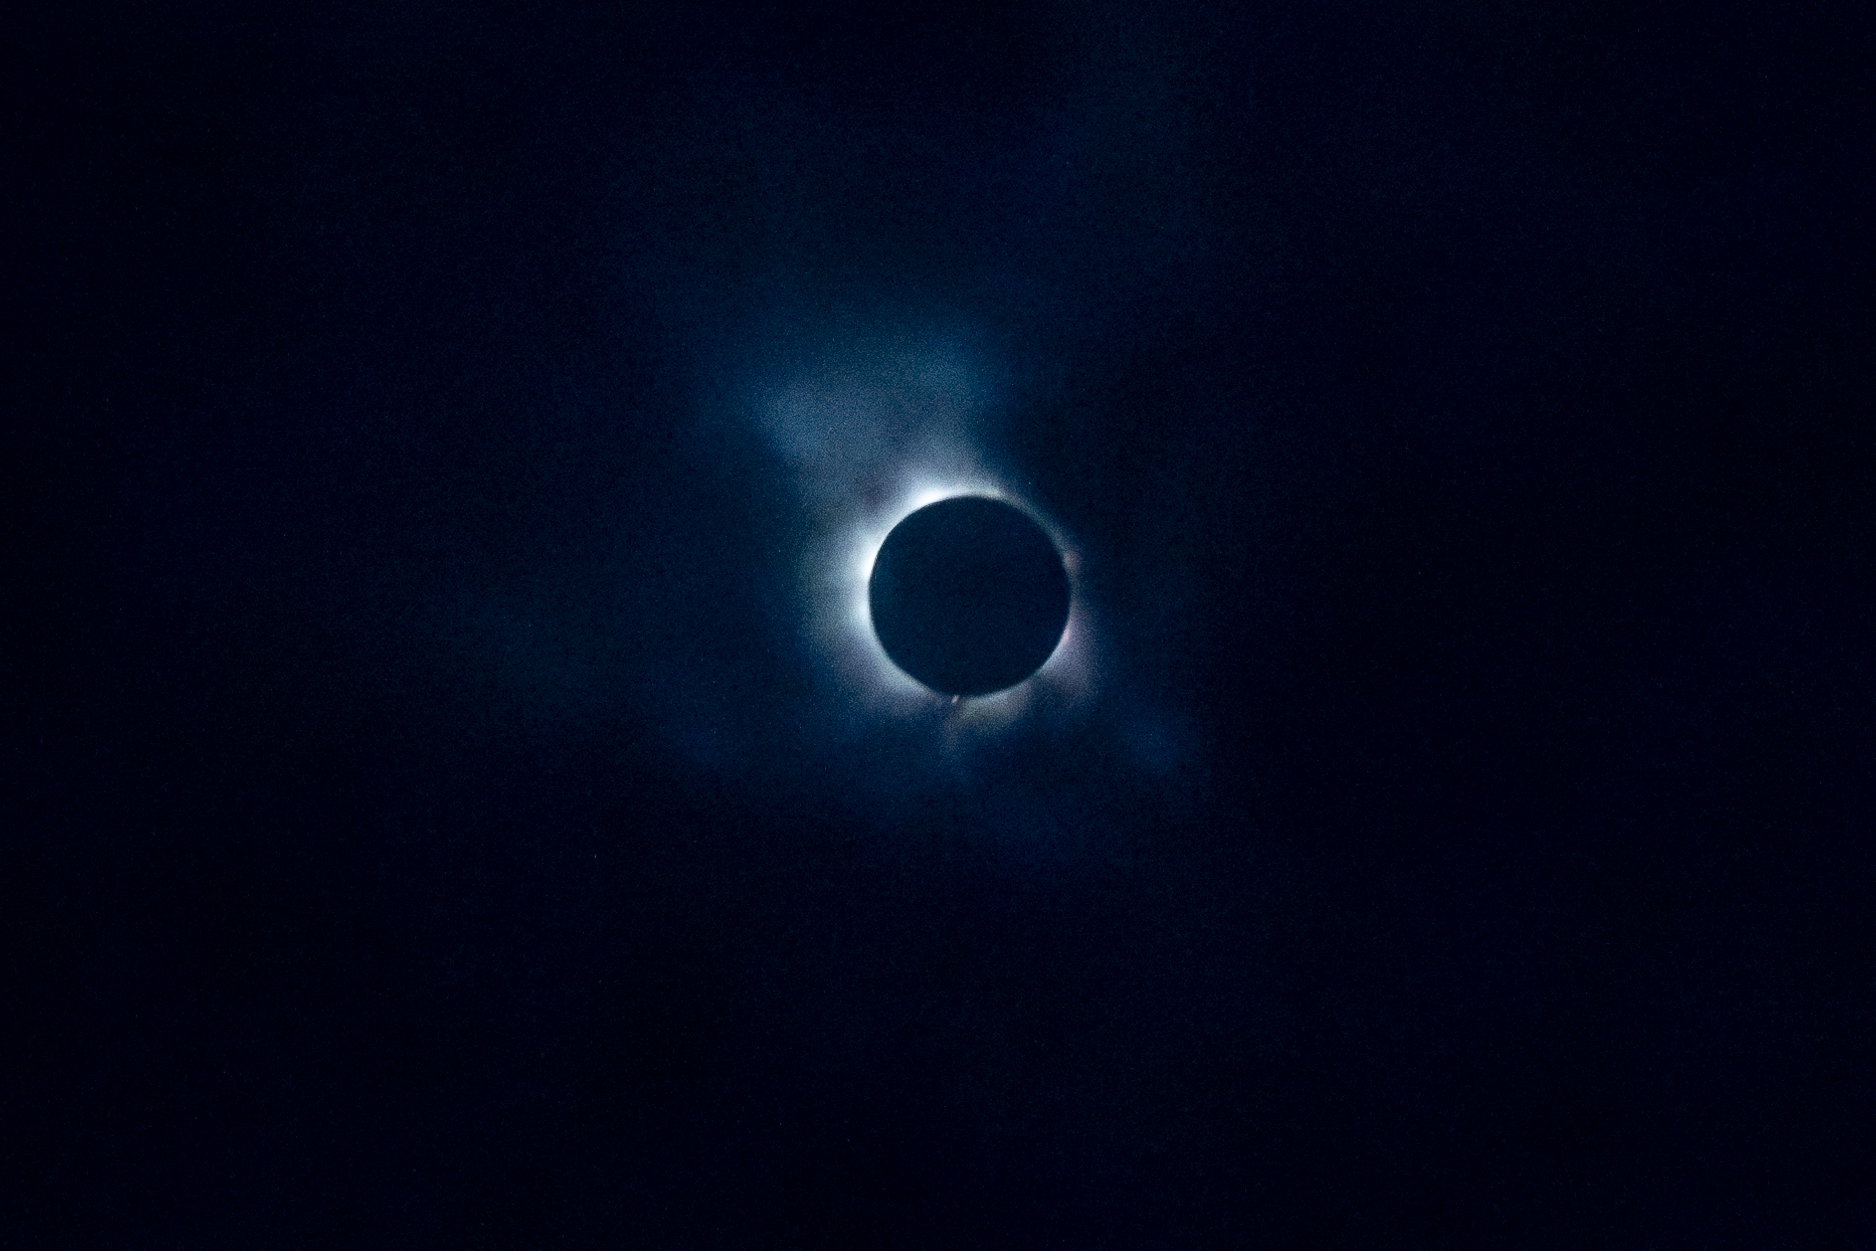 Total Solar Eclipse Results in Unprecedented Media Coverage for Niagara Falls